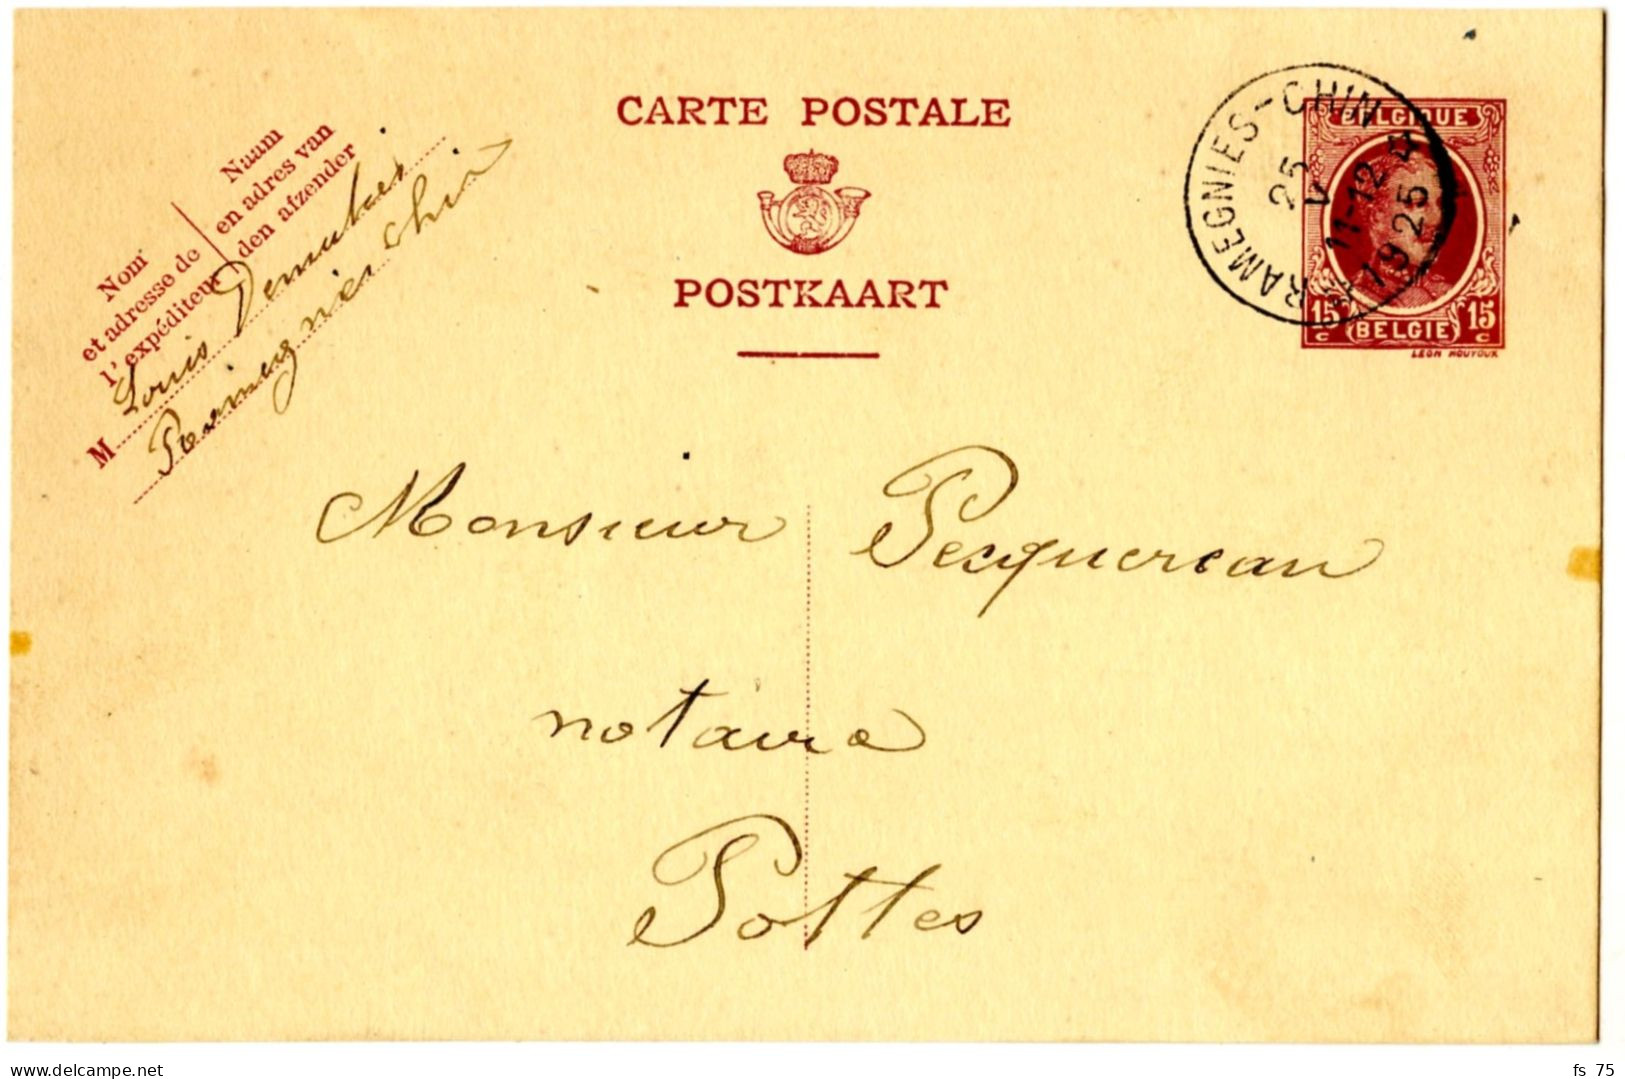 BELGIQUE - SIMPLE CERCLE RELAIS A ETOILES RAMEGNIES-CHIN SUR ENTIER CARTE POSTALE 15C HOUYOUX, 1925 - Postmarks With Stars